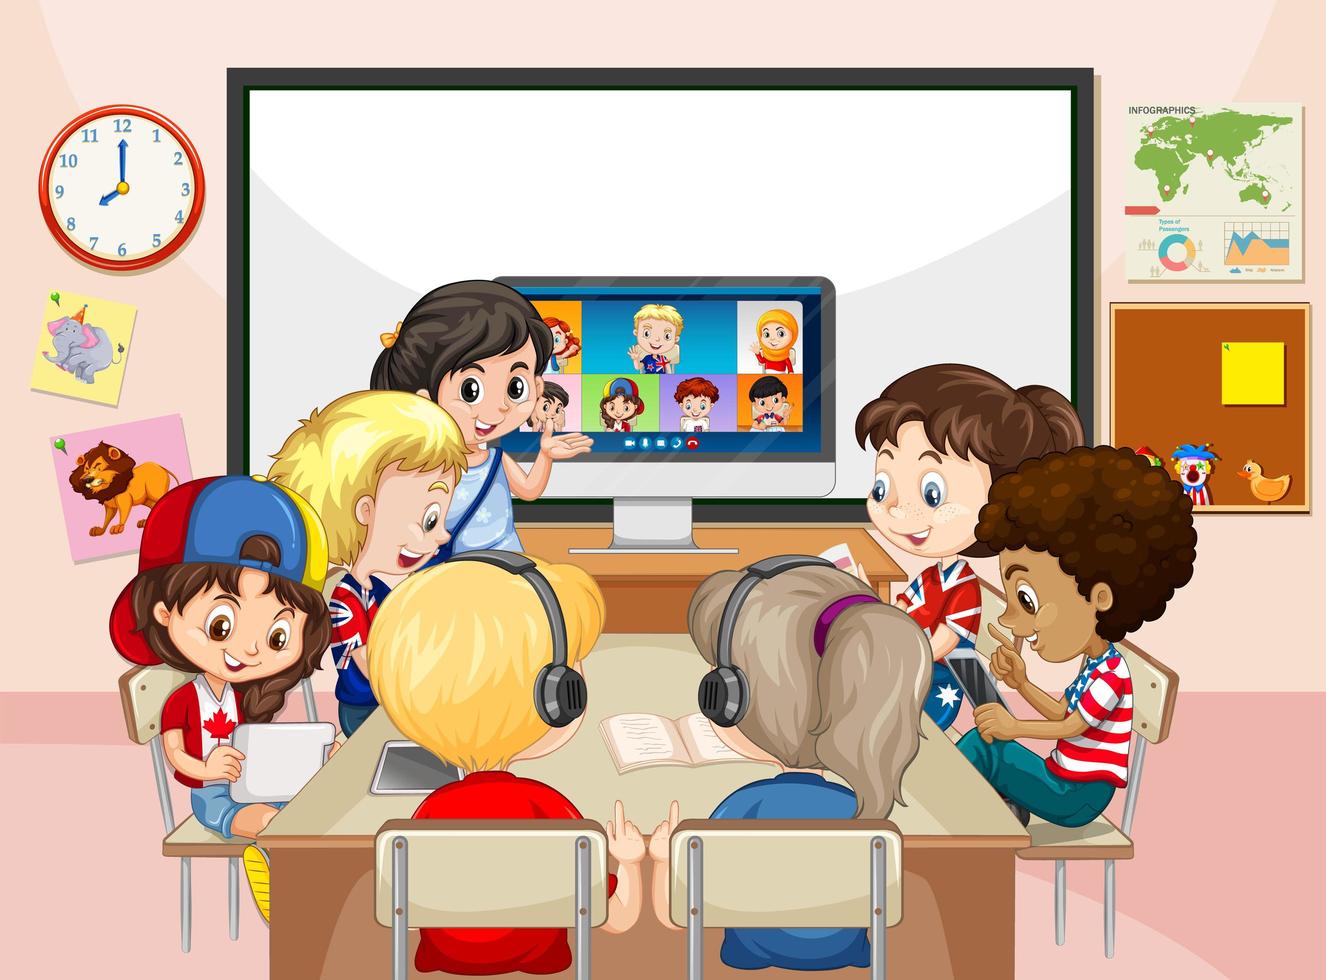 bambini che utilizzano laptop per comunicare in videoconferenza con insegnante e amici nella scena della classe vettore